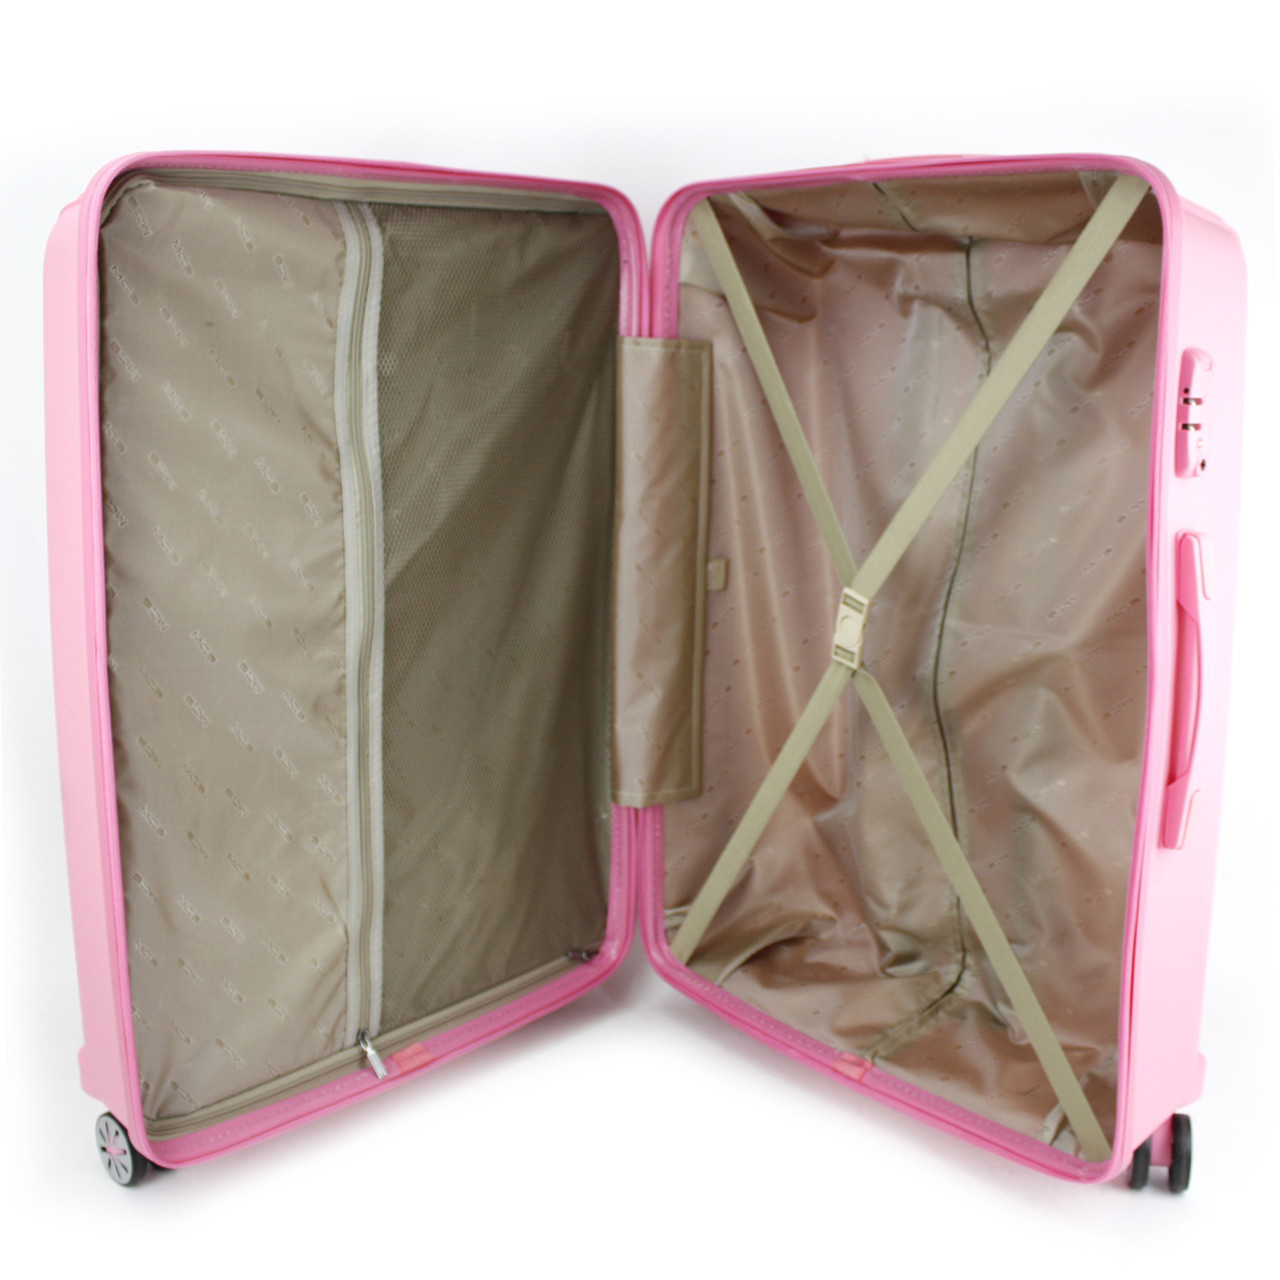 Маленький чемодан для ручьной клади из полипропилена MCS V305 S PINK! Для 8-10 кг! - 2